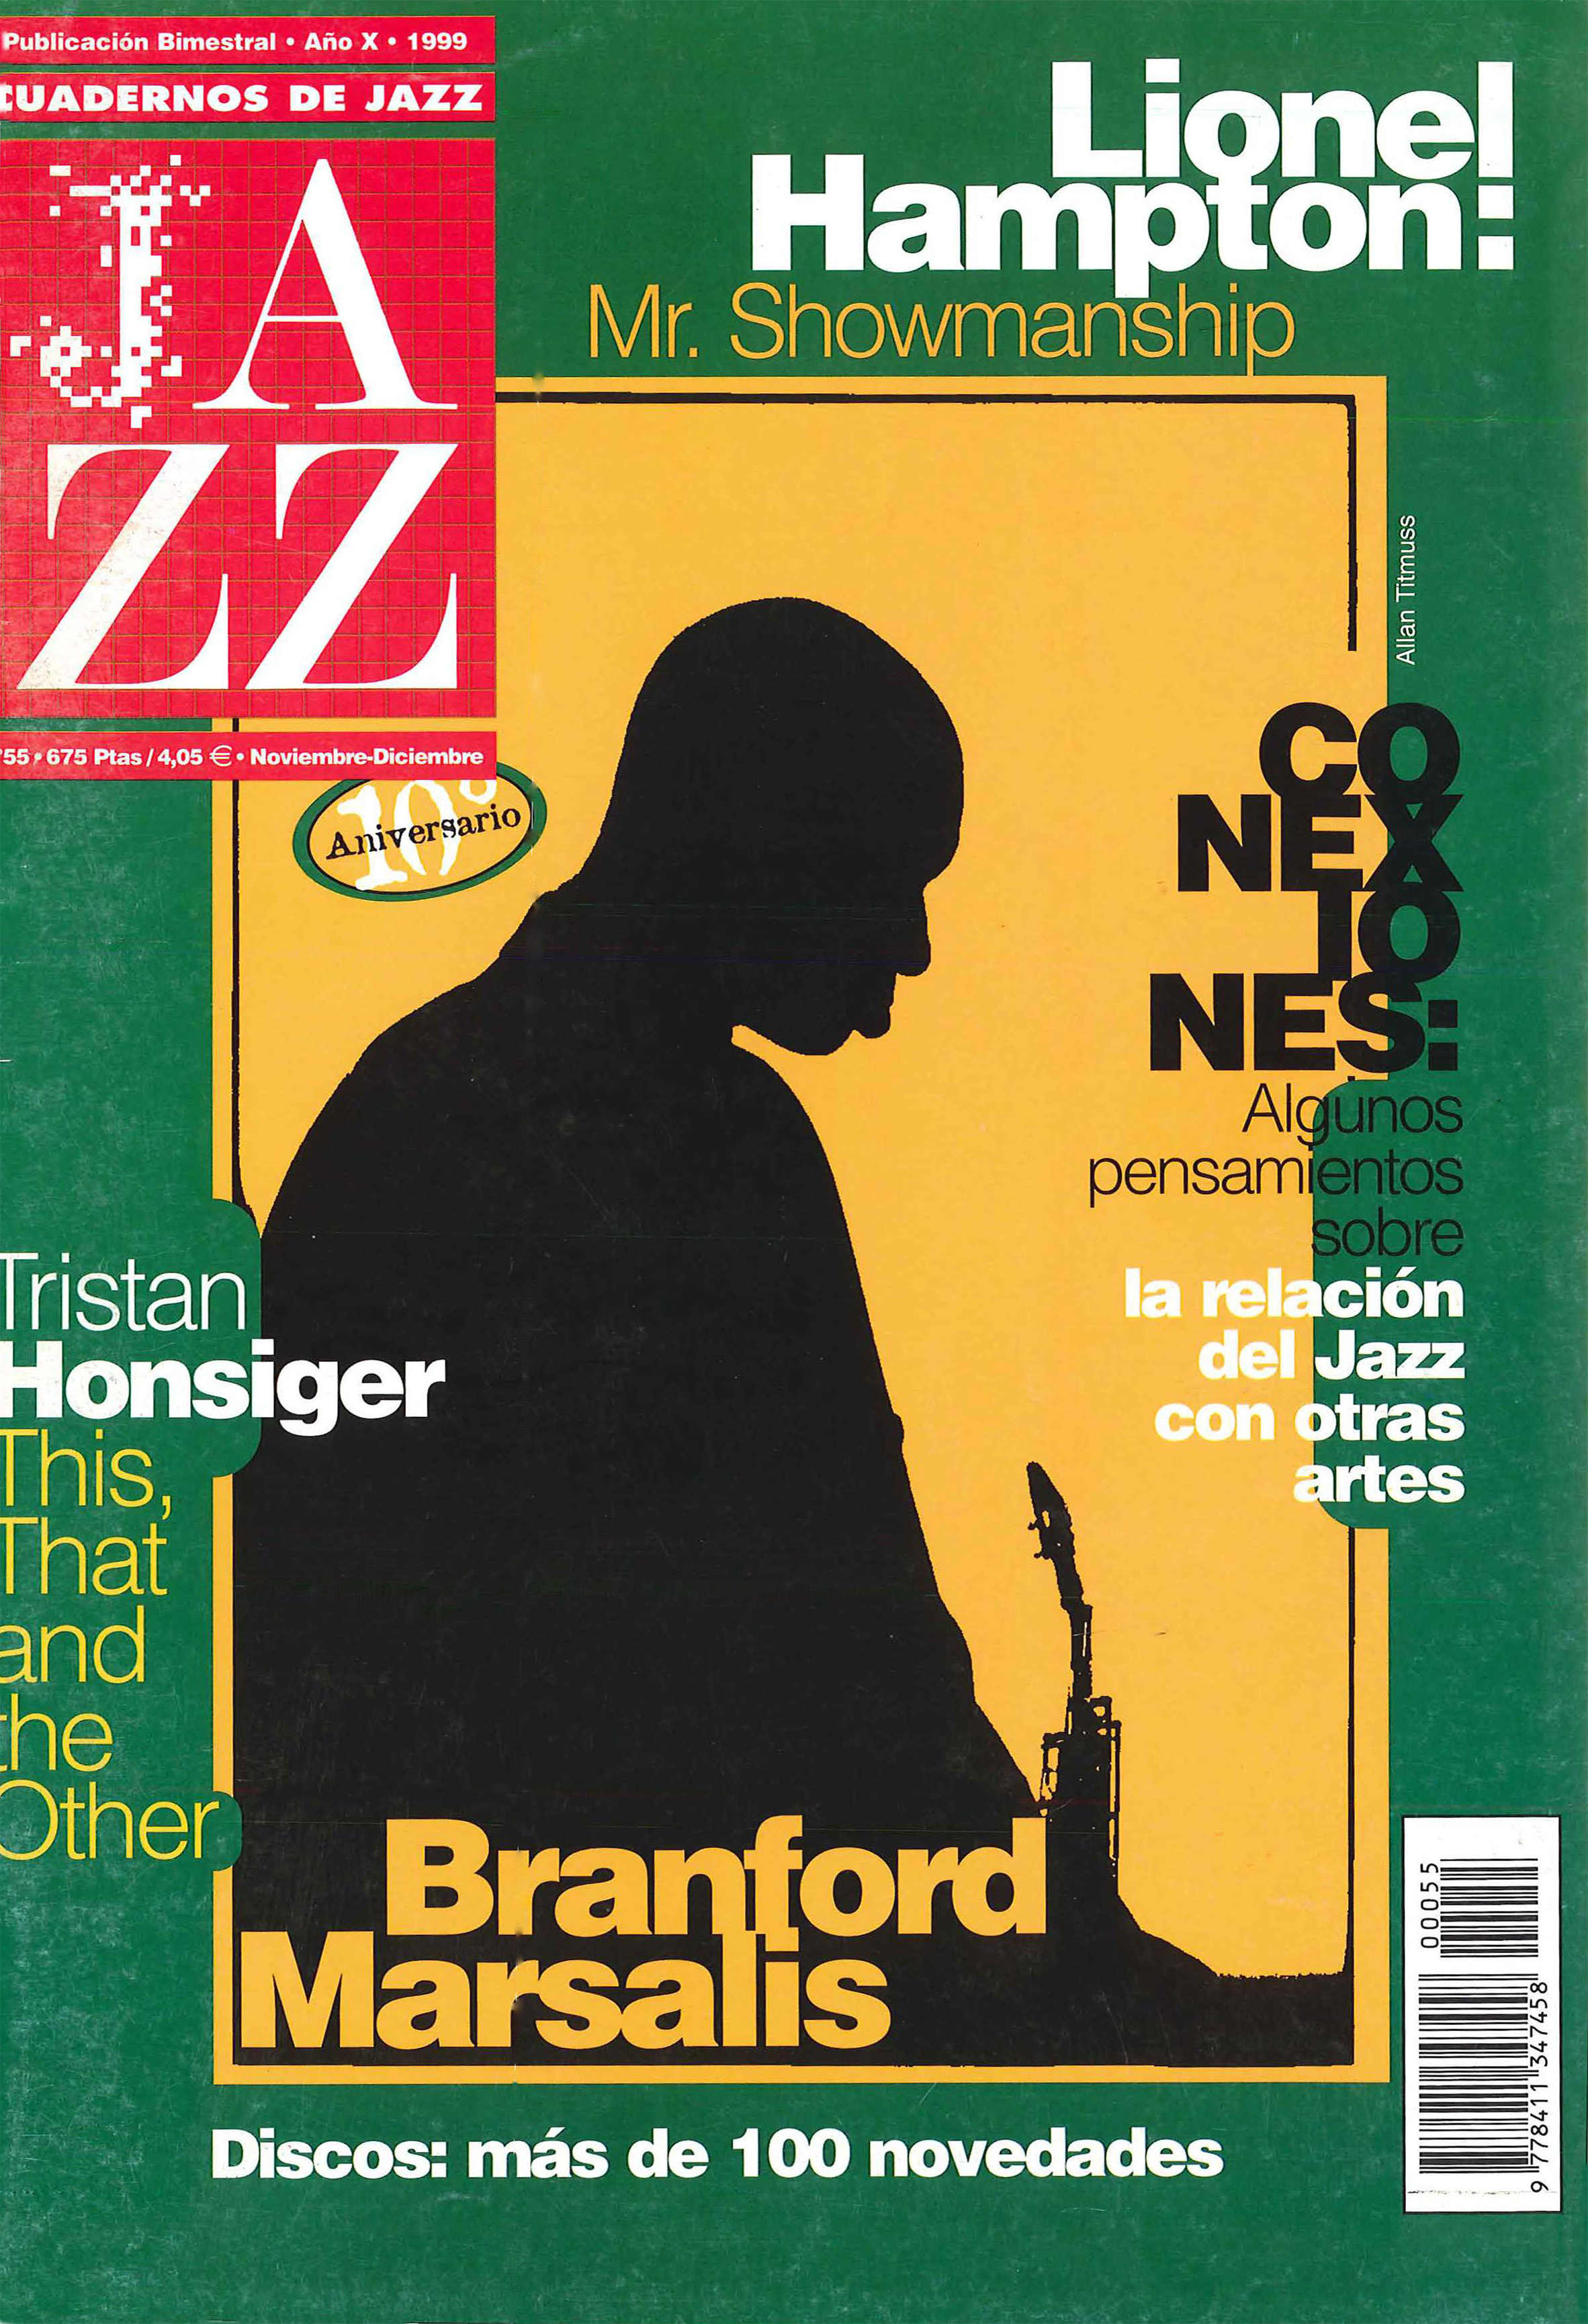 Cubierta del número 55 de la revista Cuadernos de Jazz